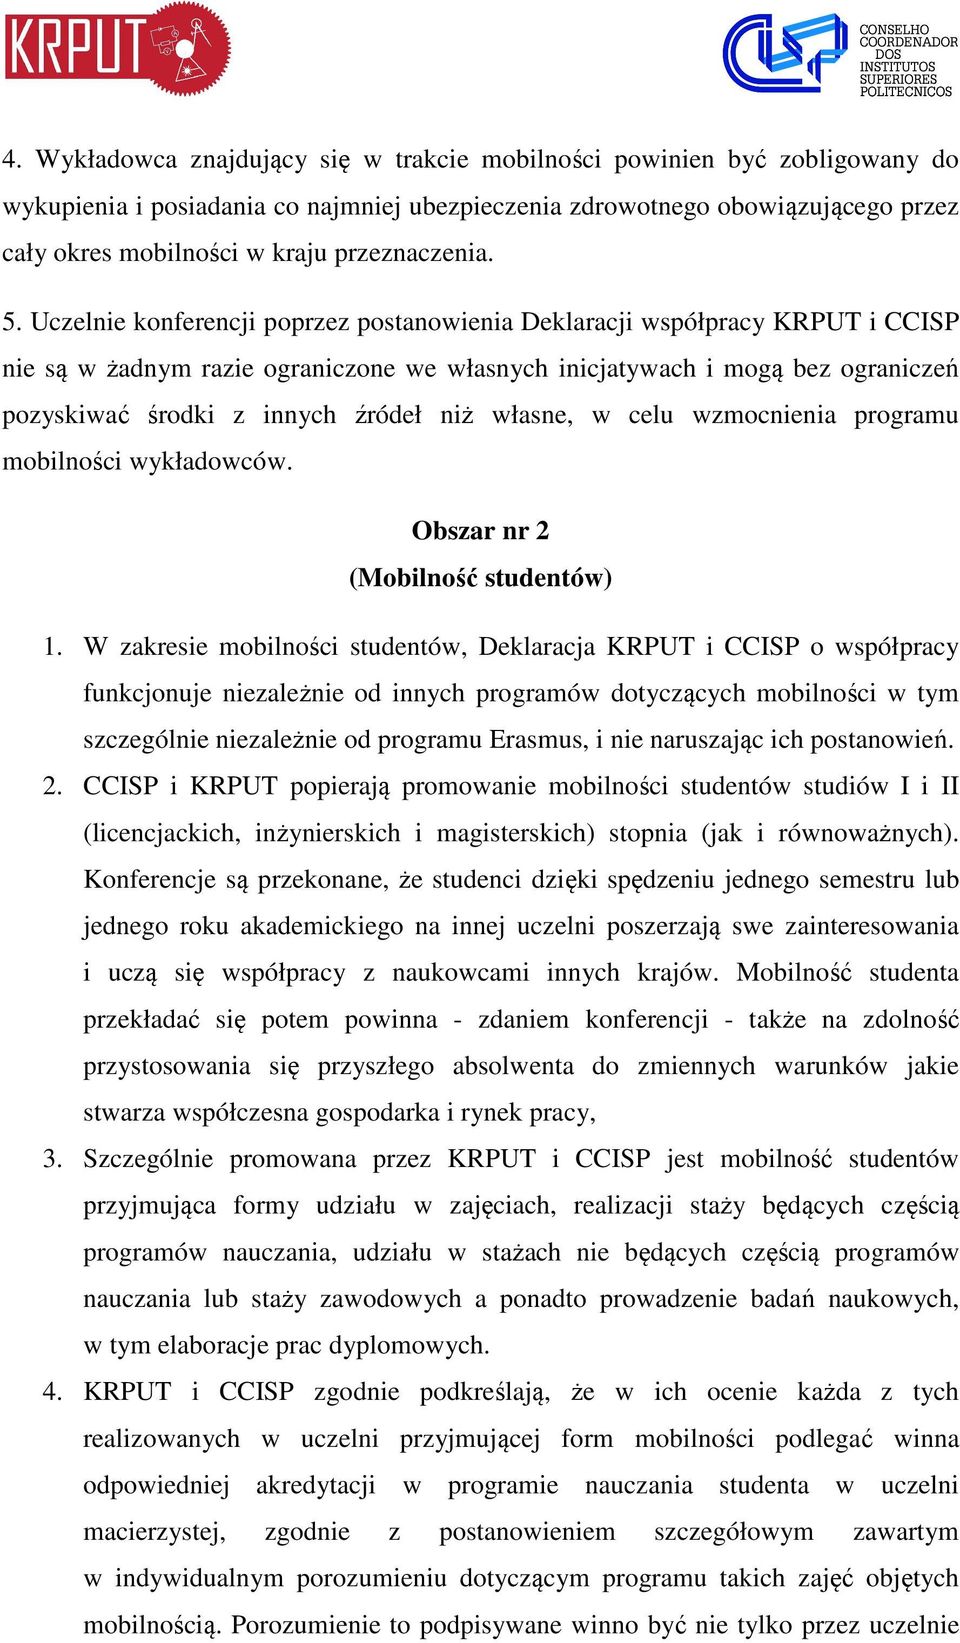 Uczelnie konferencji poprzez postanowienia Deklaracji współpracy KRPUT i CCISP nie są w żadnym razie ograniczone we własnych inicjatywach i mogą bez ograniczeń pozyskiwać środki z innych źródeł niż